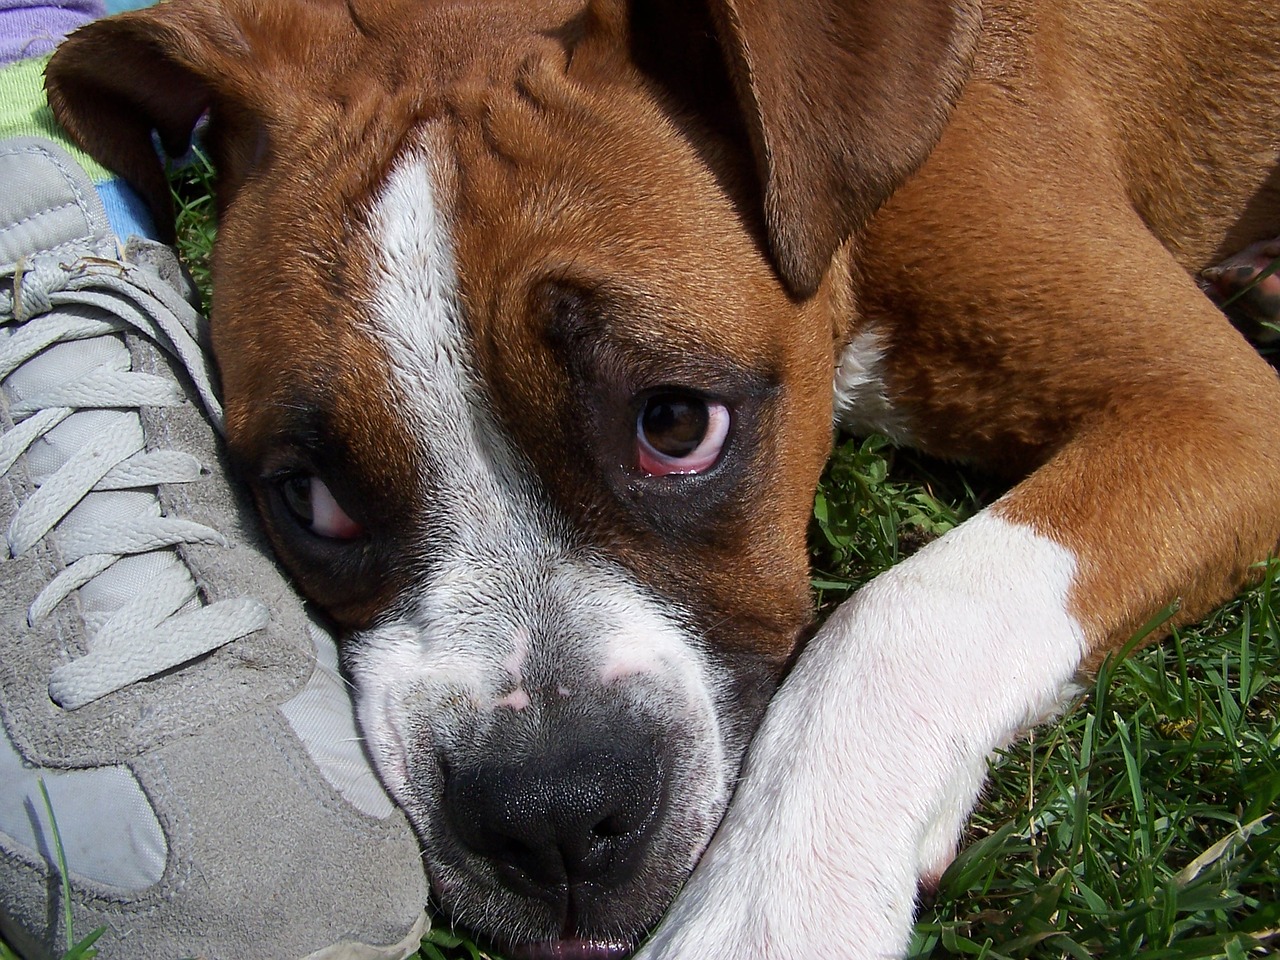 A dog looking sad alongside a tennis shoe